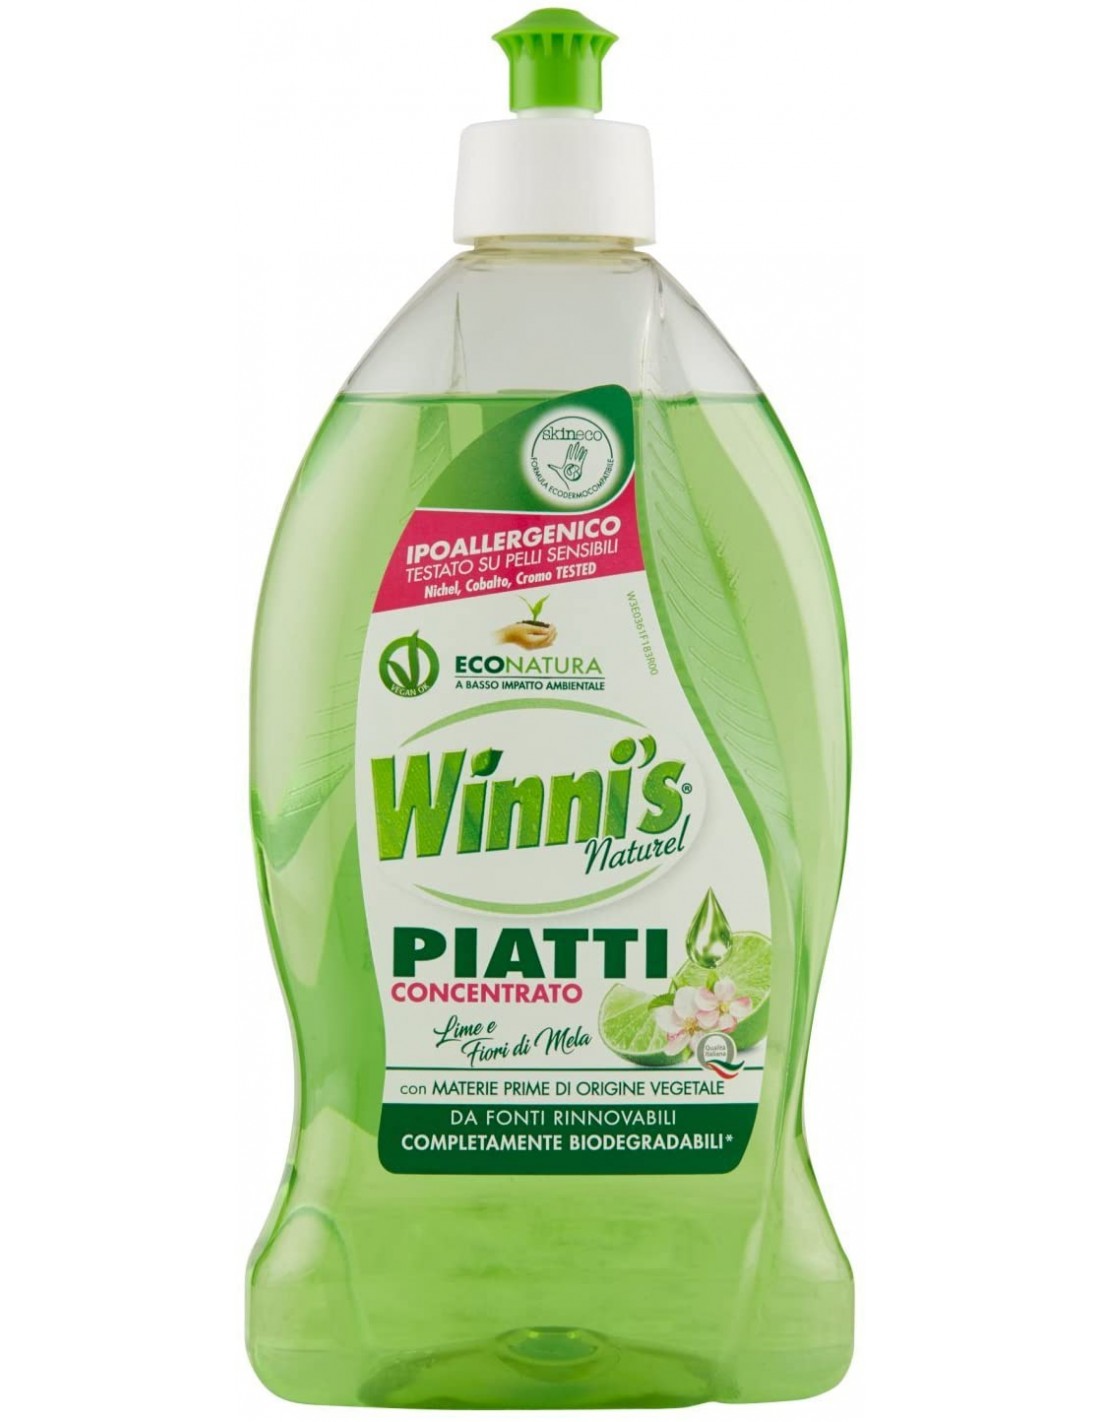 Winni's Detersivo Piatti Detergente Concentrato Limone e Fiori di Mela 500ml